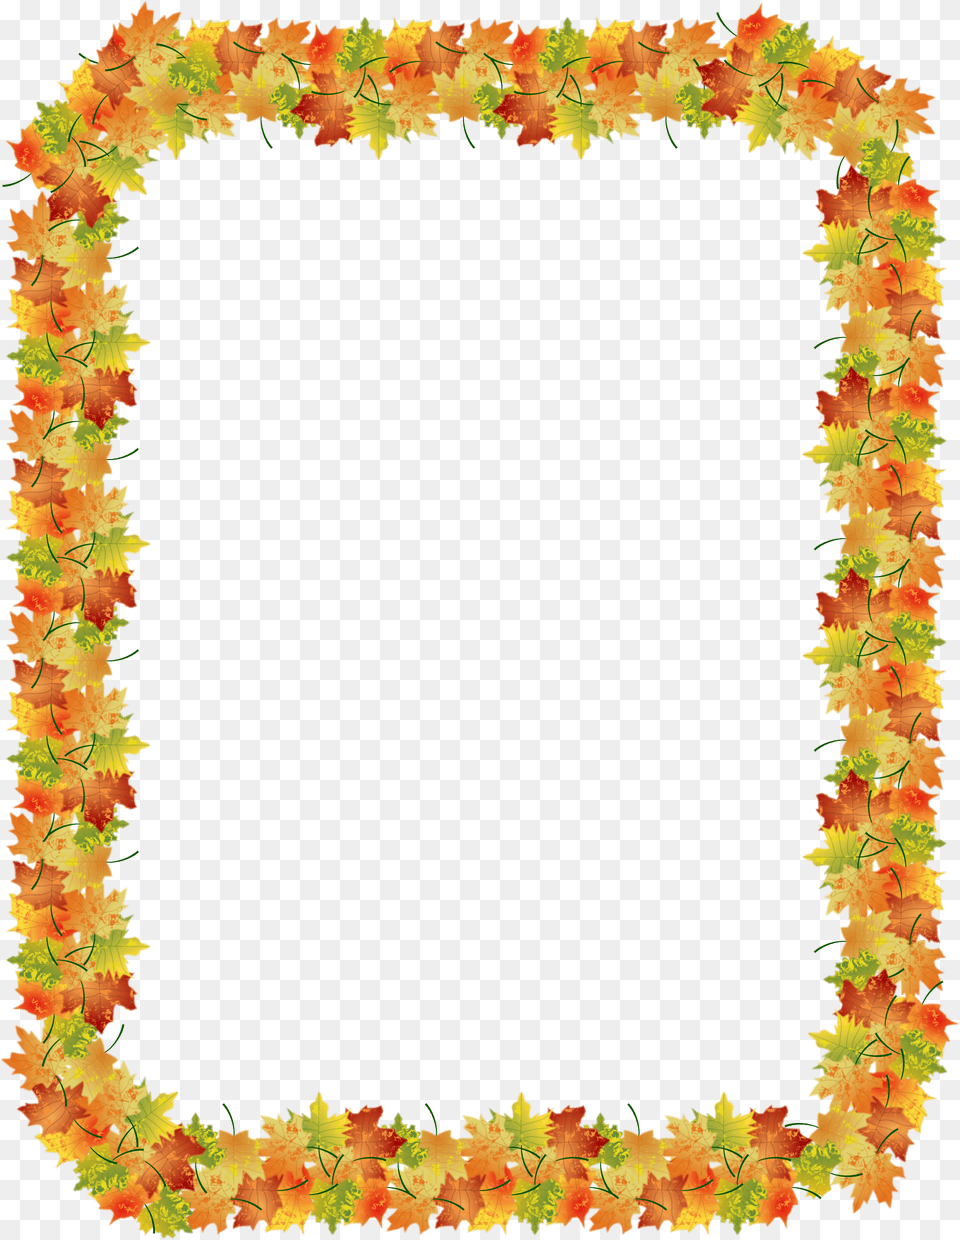 Autumn Leaf Border Clip Art, Accessories, Flower, Flower Arrangement, Ornament Png Image